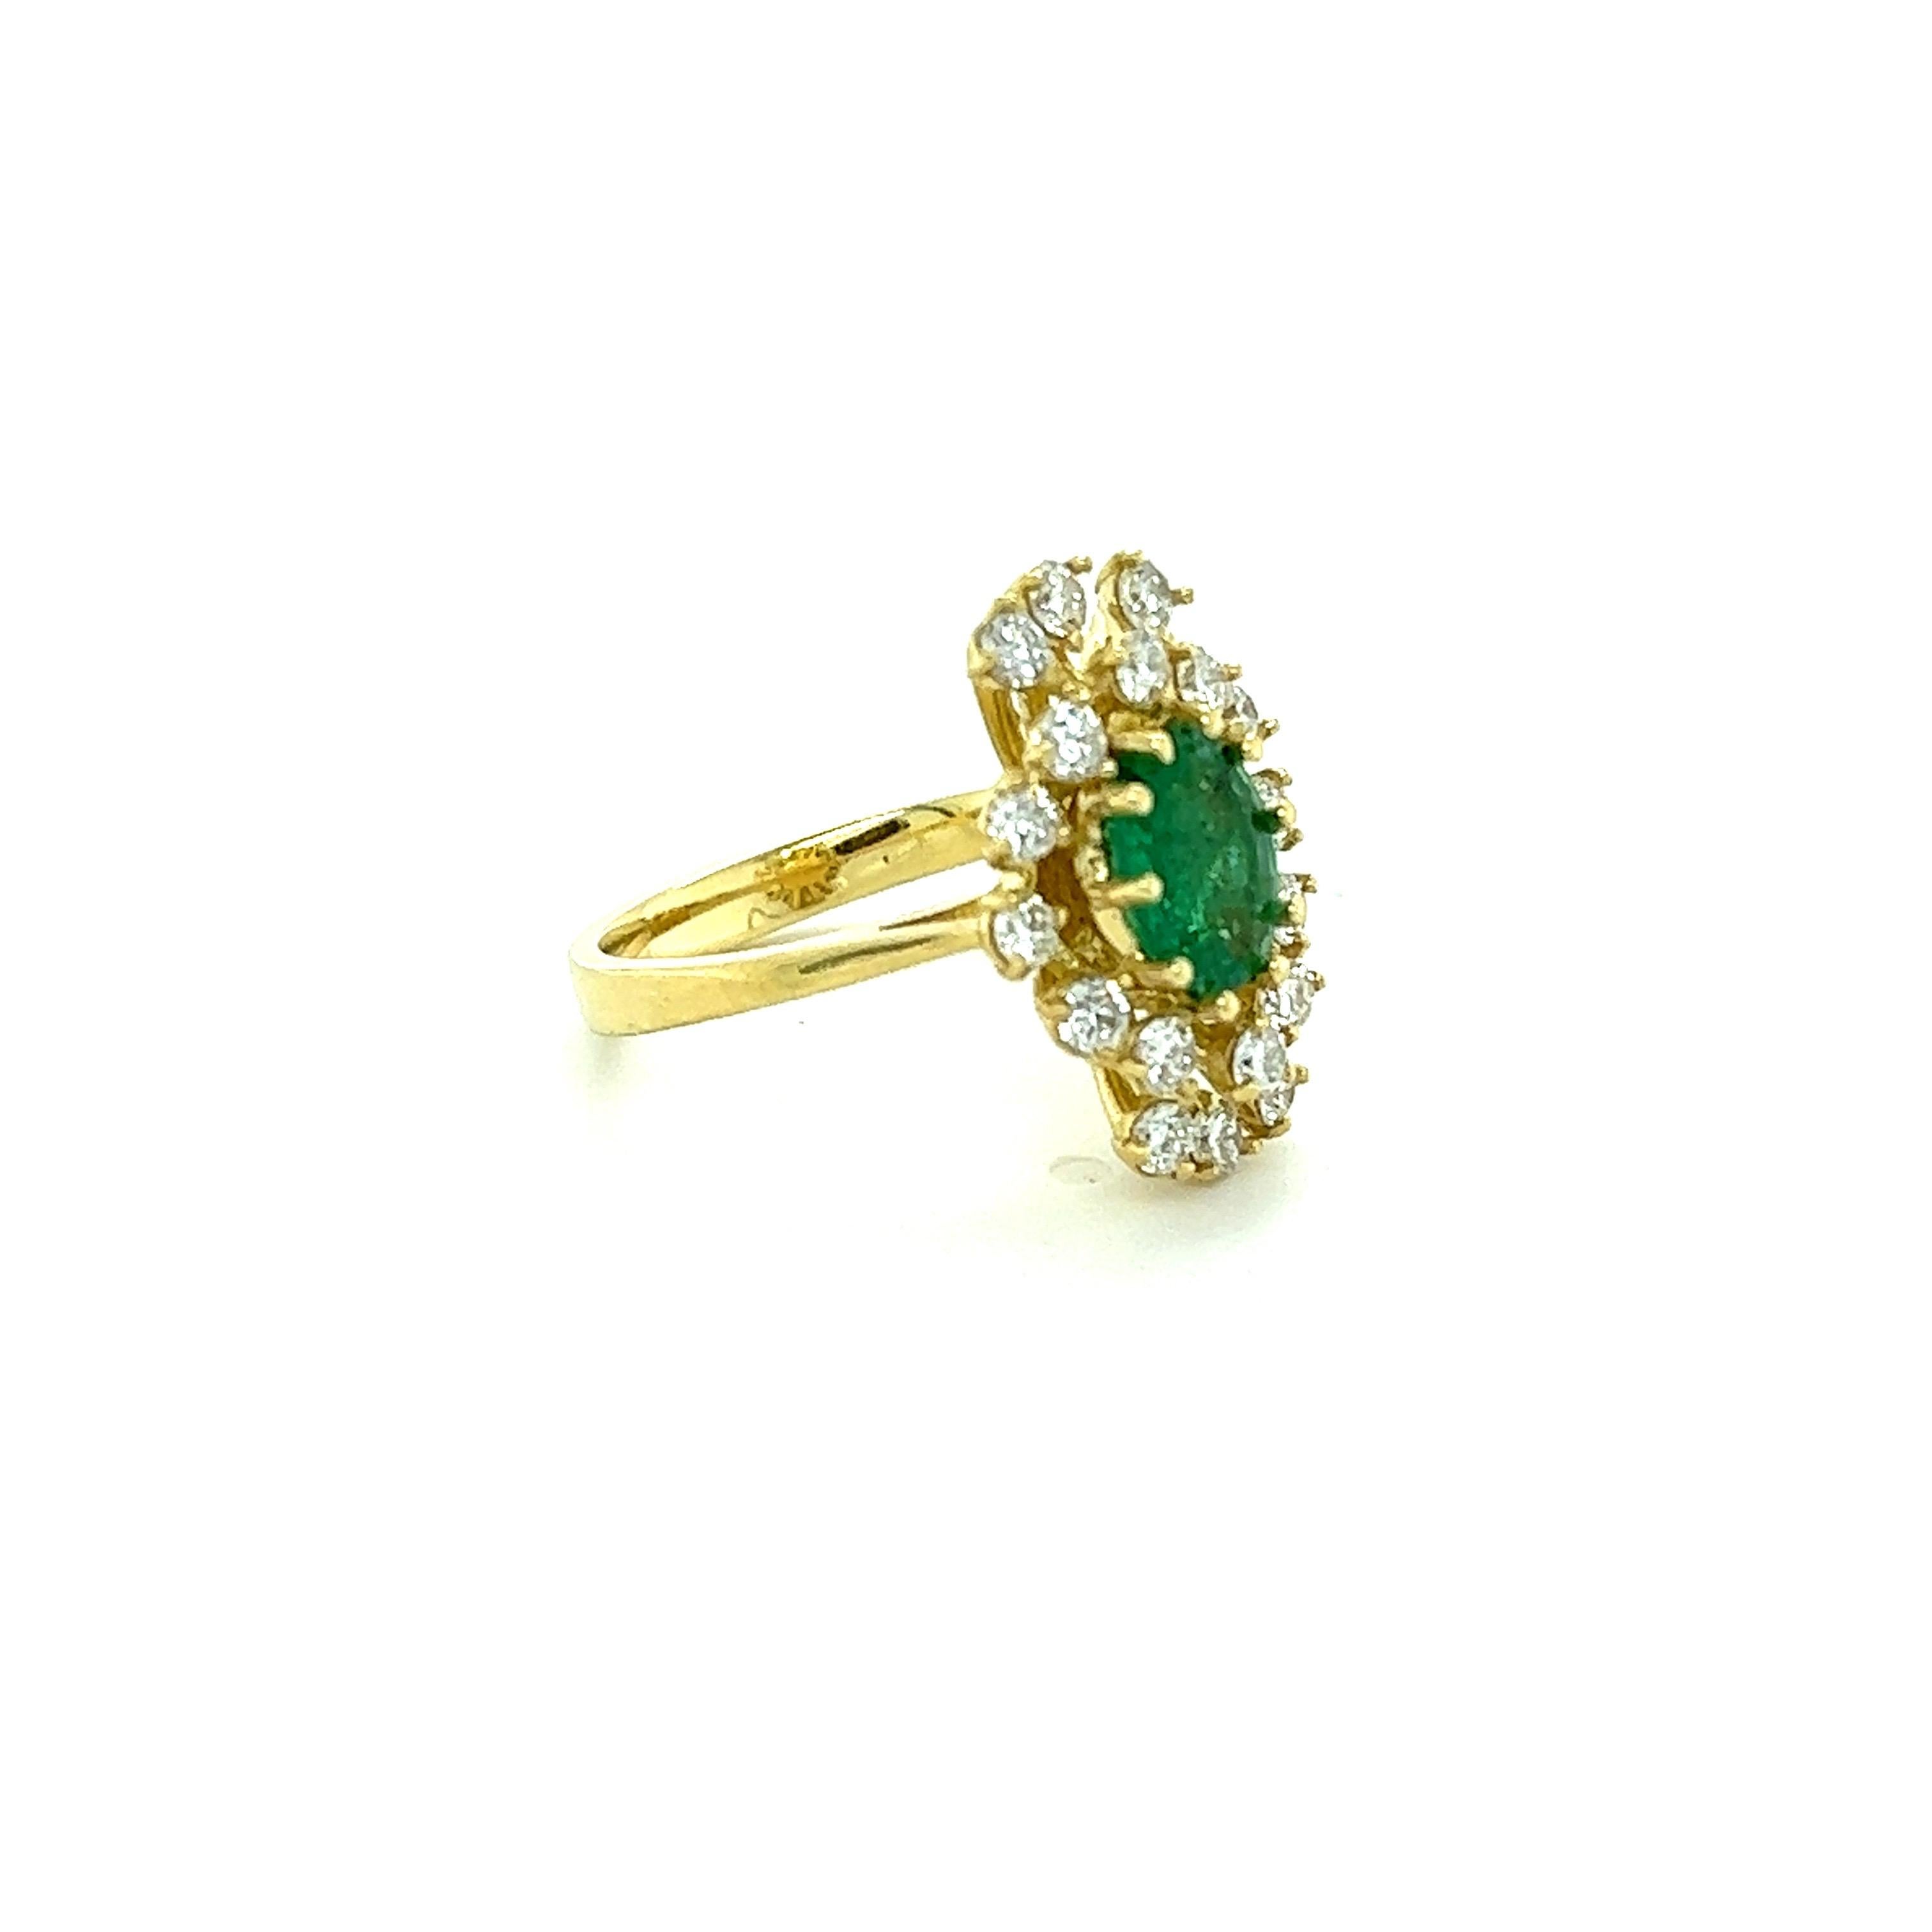 Dieser Ring hat einen 1,03 Karat schweren Smaragd im Ovalschliff und ist umgeben von 18 Diamanten im Rundschliff mit einem Gewicht von 0,84 Karat. (Reinheit: SI1, Farbe: F) Das Gesamtkaratgewicht des Rings beträgt 1,87 Karat. 
Der Smaragd im